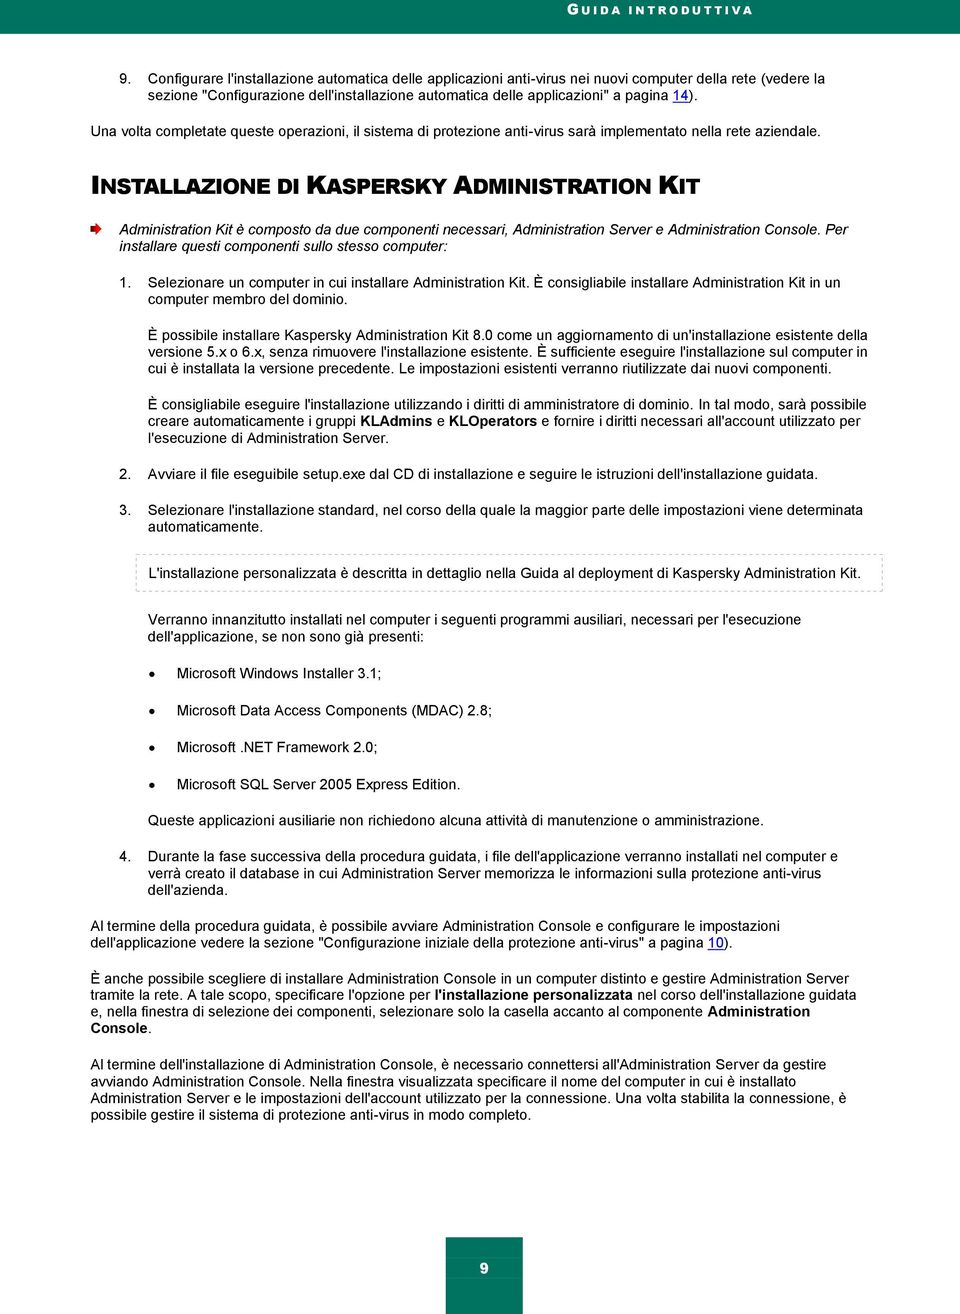 INSTALLAZIONE DI KASPERSKY ADMINISTRATION KIT Administration Kit è composto da due componenti necessari, Administration Server e Administration Console.